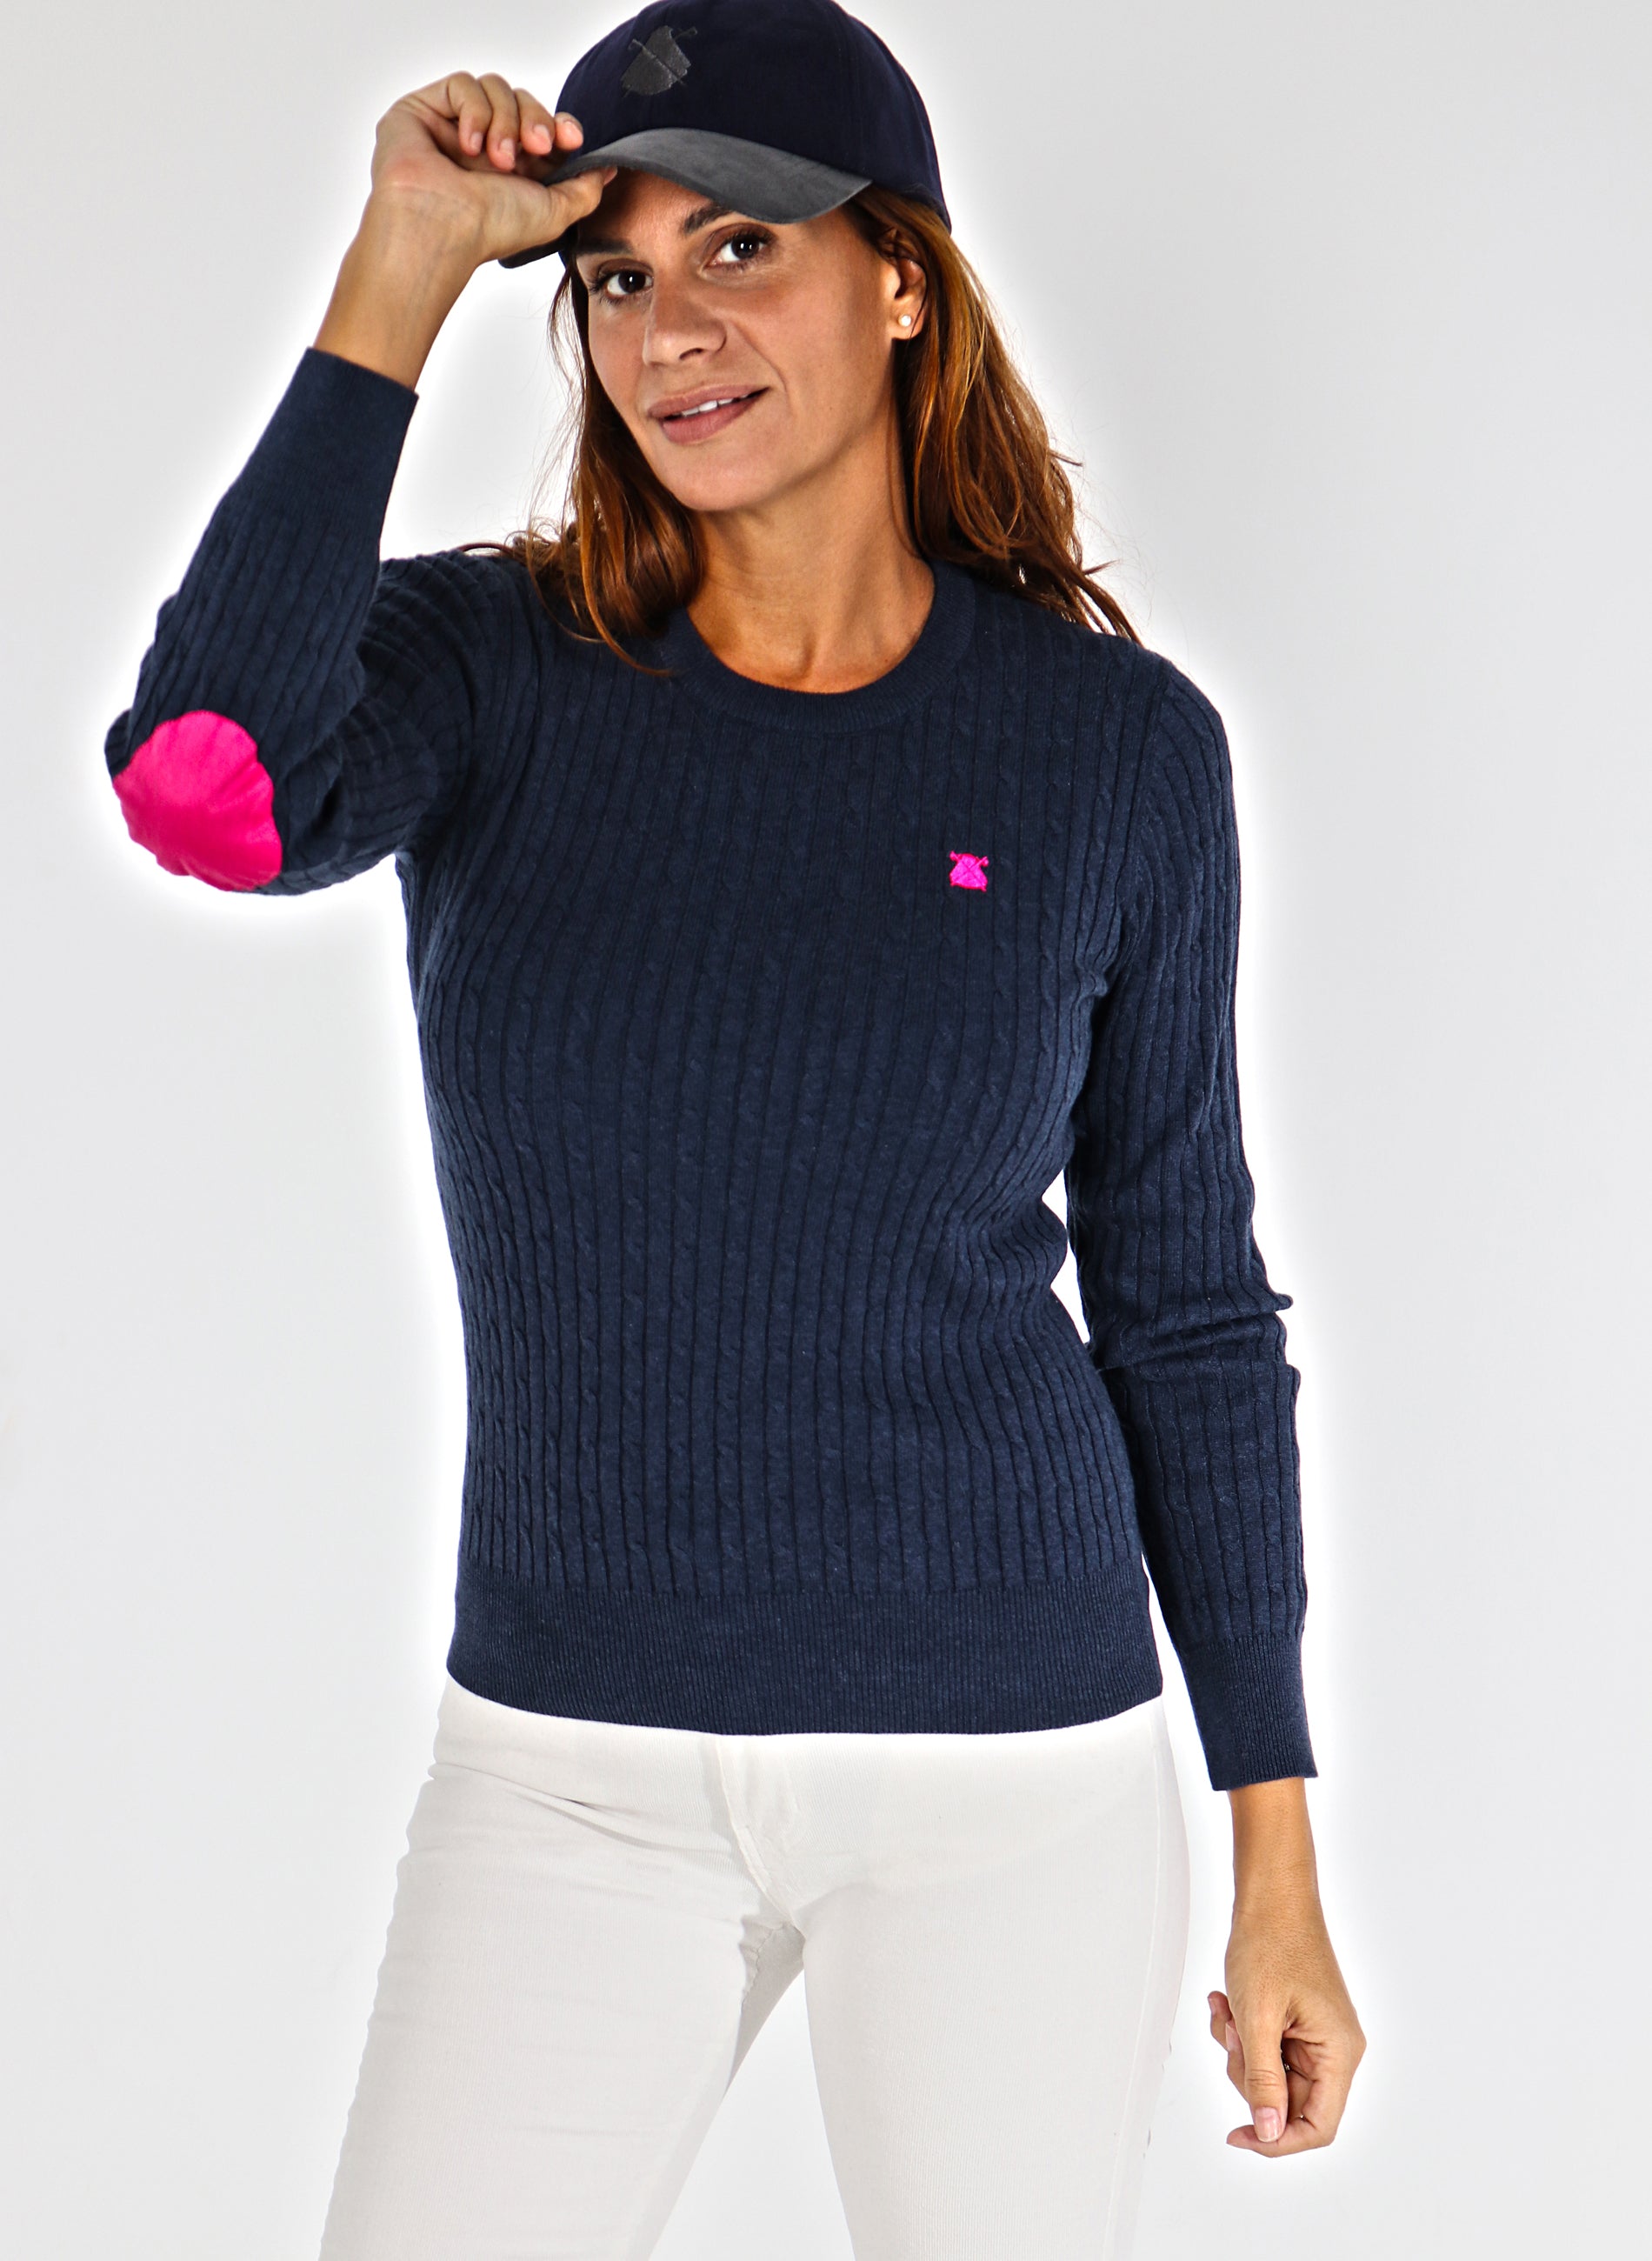 Marineblauer Zopfmuster-Pullover für Damen mit Ellbogen-Patches.